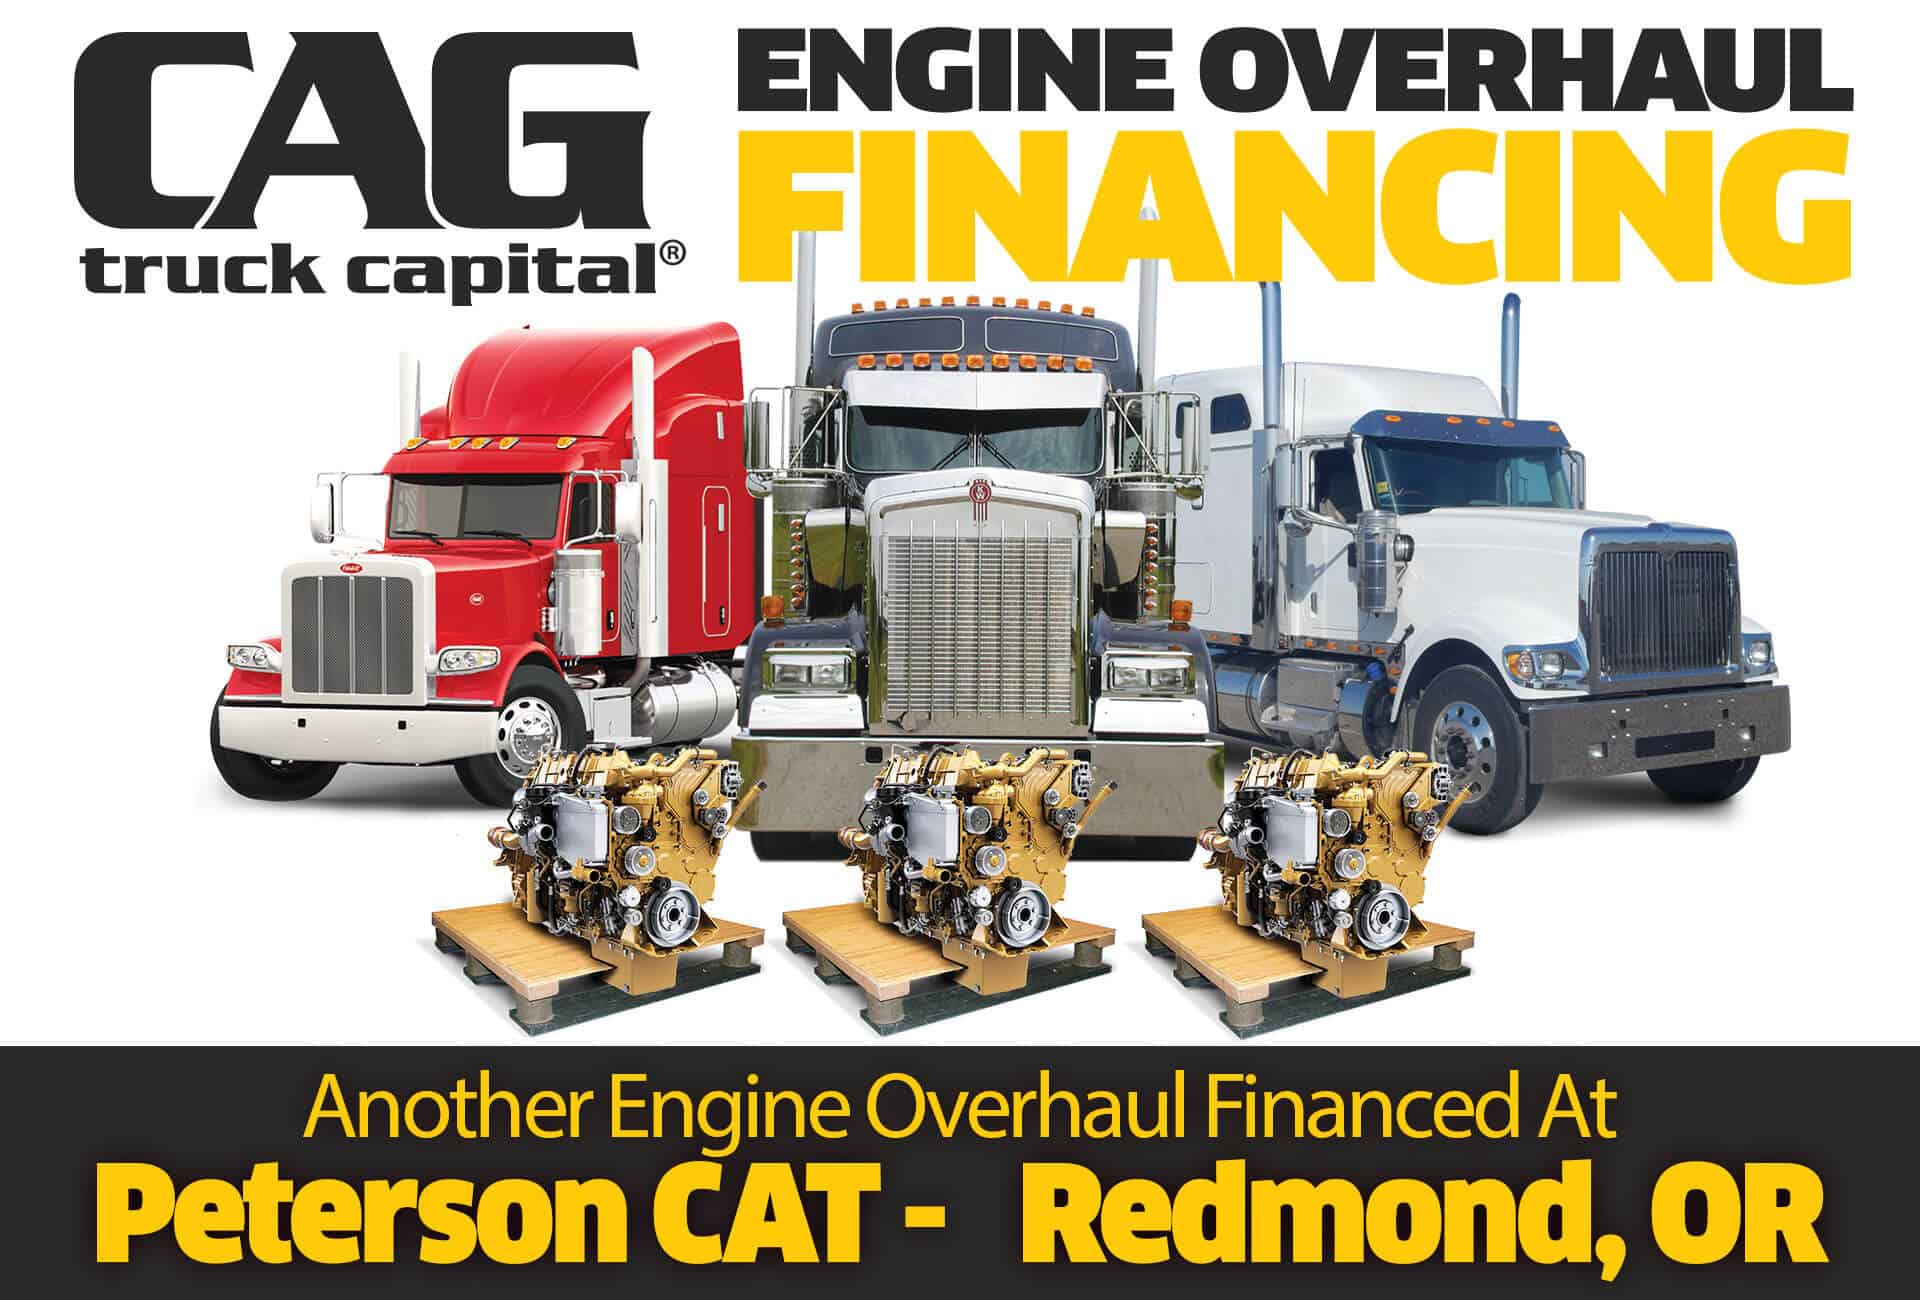 CAG Finances Engine Overhauls In Redmond, OR